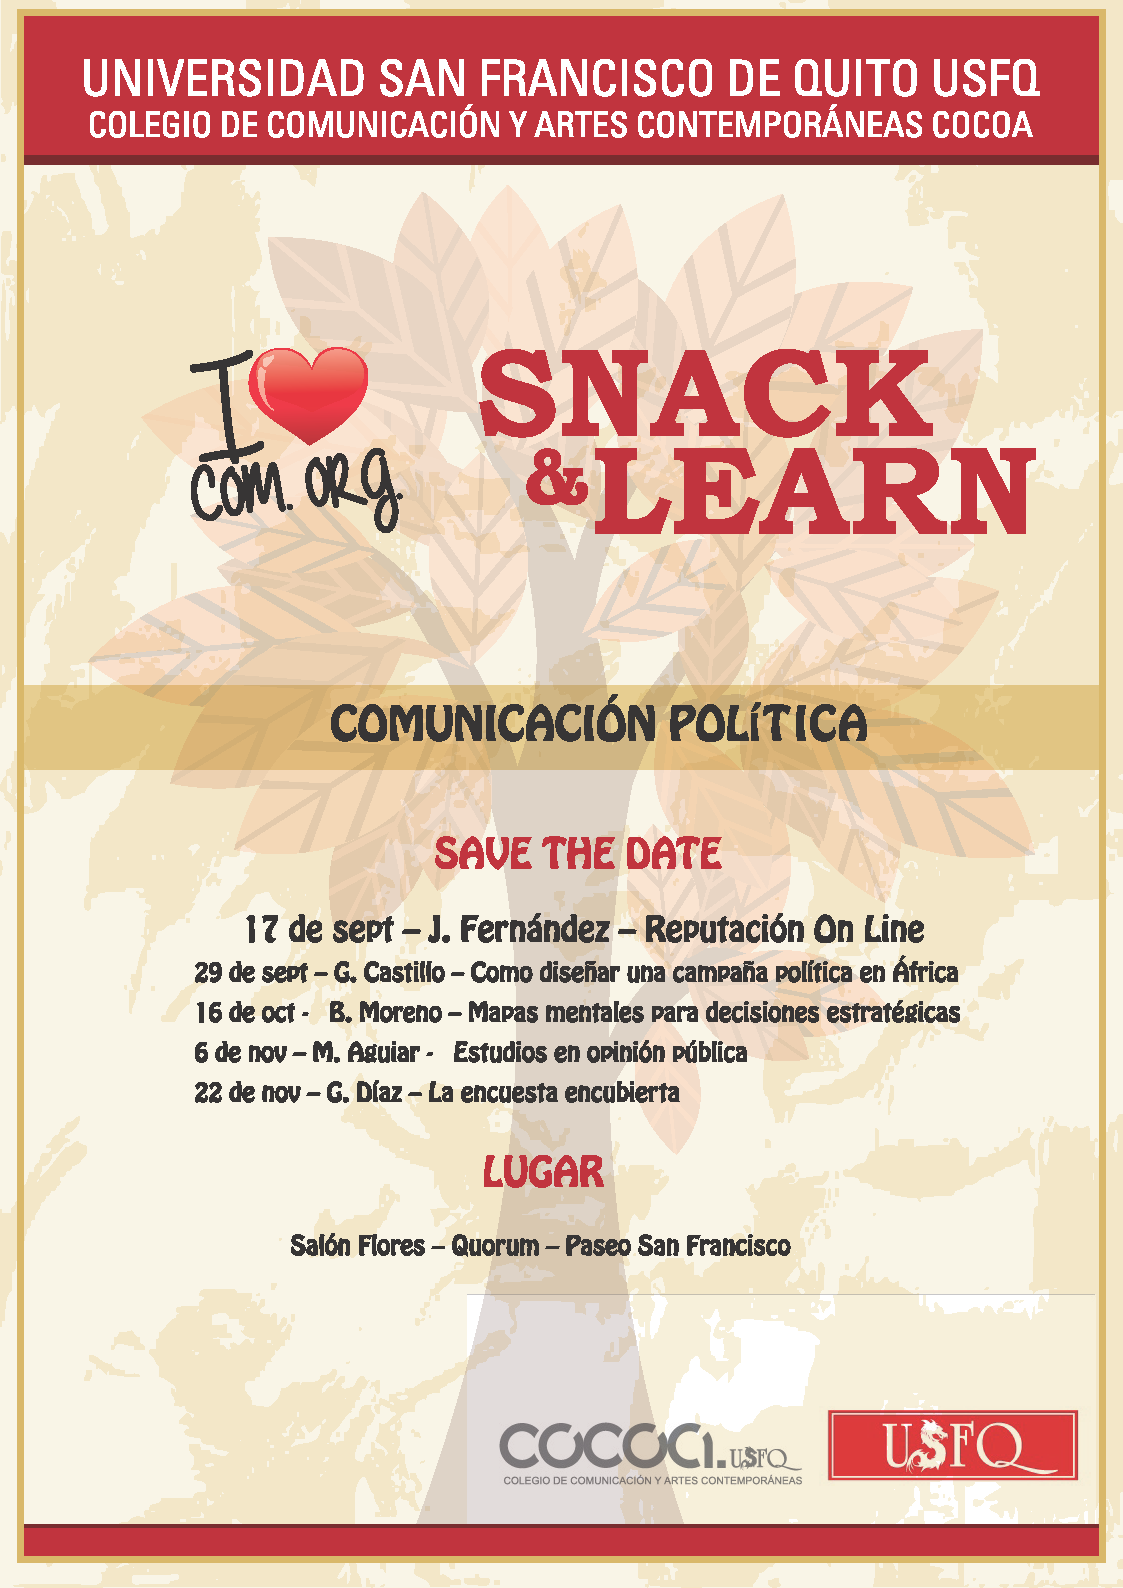 El Colegio de Comunicación y Artes Contemporáneas COCOA-USFQ invita al nuevo ciclo de conferencias "Snack & Learn". Inicio 17 septiembre, 13h00